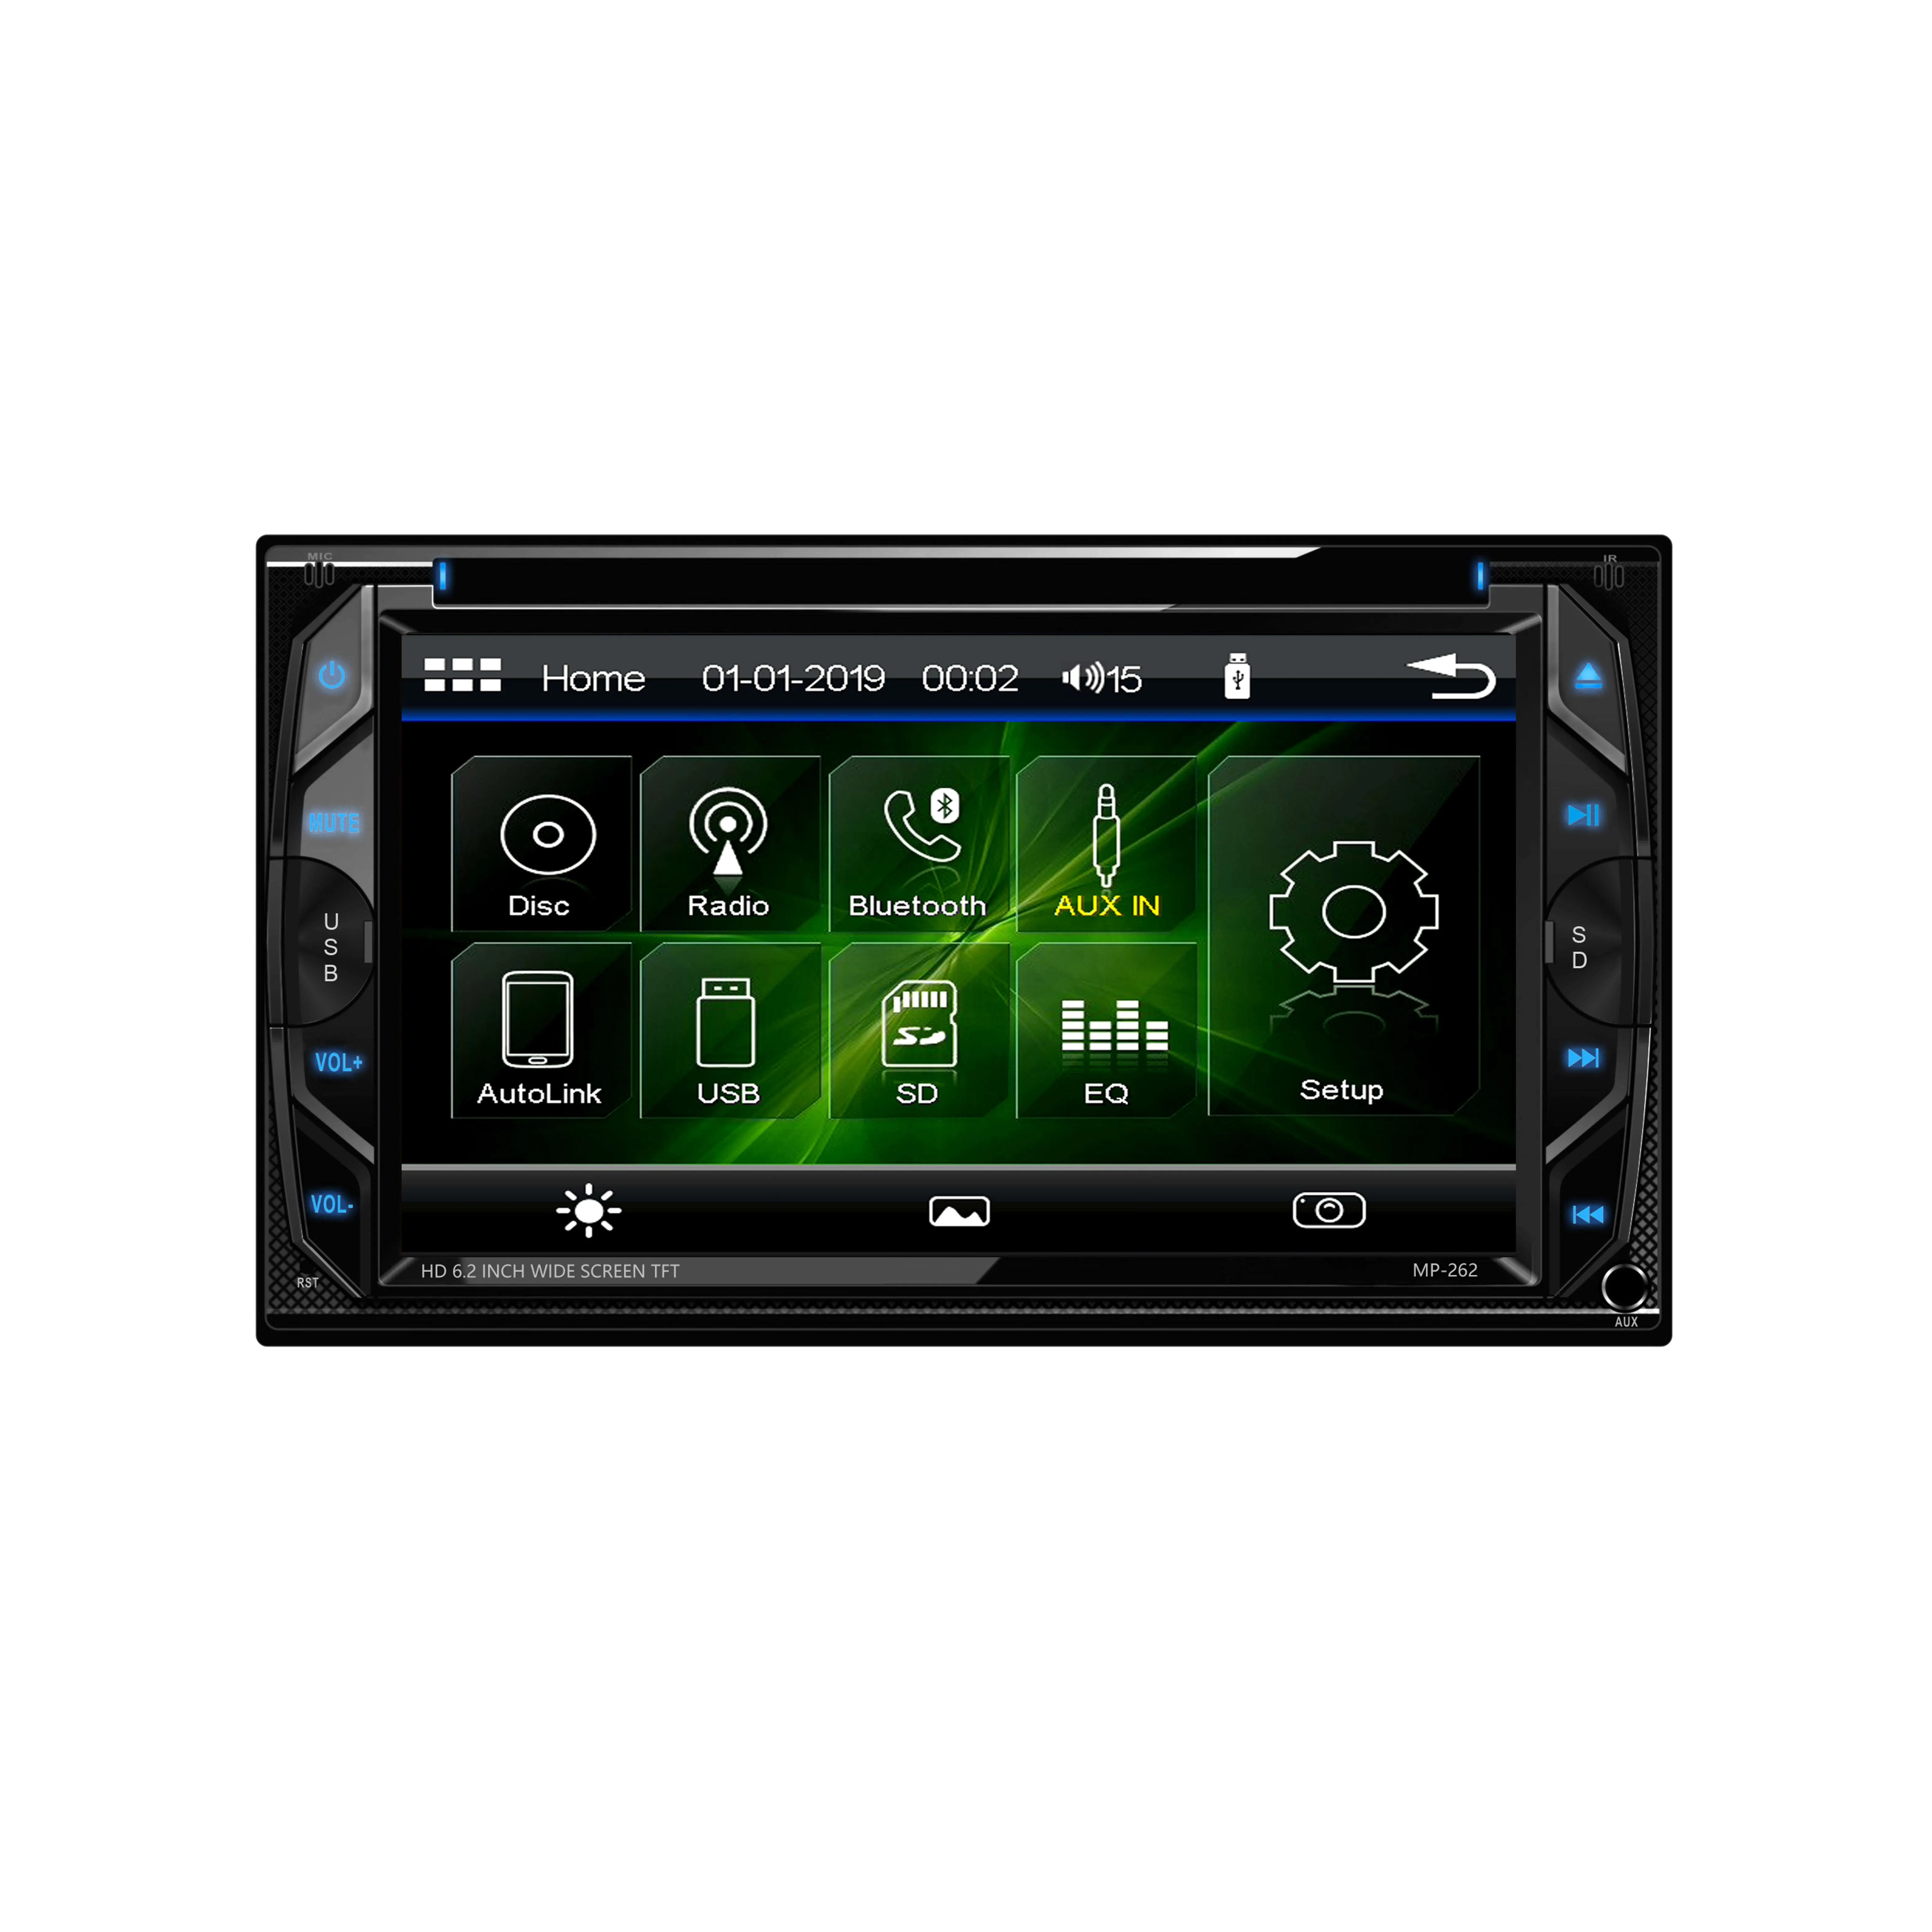 Podwójny ekran dotykowy Radio Podwójny samochód DVD DVD Bluetooth Audio/Bez użycia rąk wywołujące 6.2-calowy ekran dotykowy Monitor LCD, odtwarzacz MP3, CD, DVD, port USB, SD, Aux, odbiornik radiowy AM/FM